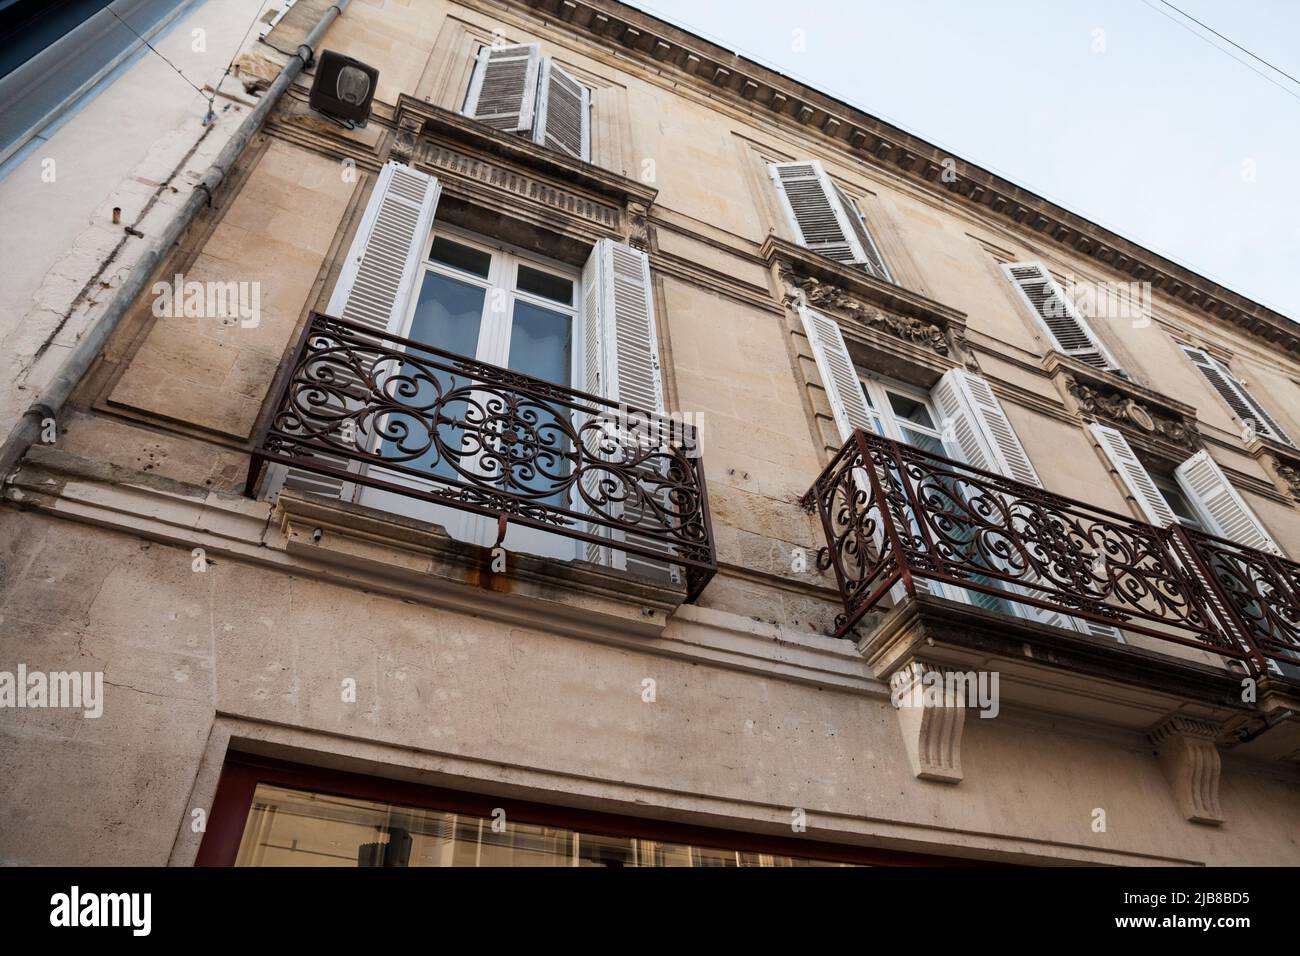 Facciata di un tipico vecchio edificio residenziale francese a Bordeaux, Francia, fatto di pietra, che ospita appartamenti, con un'architettura francese sud-occidentale e. Foto Stock